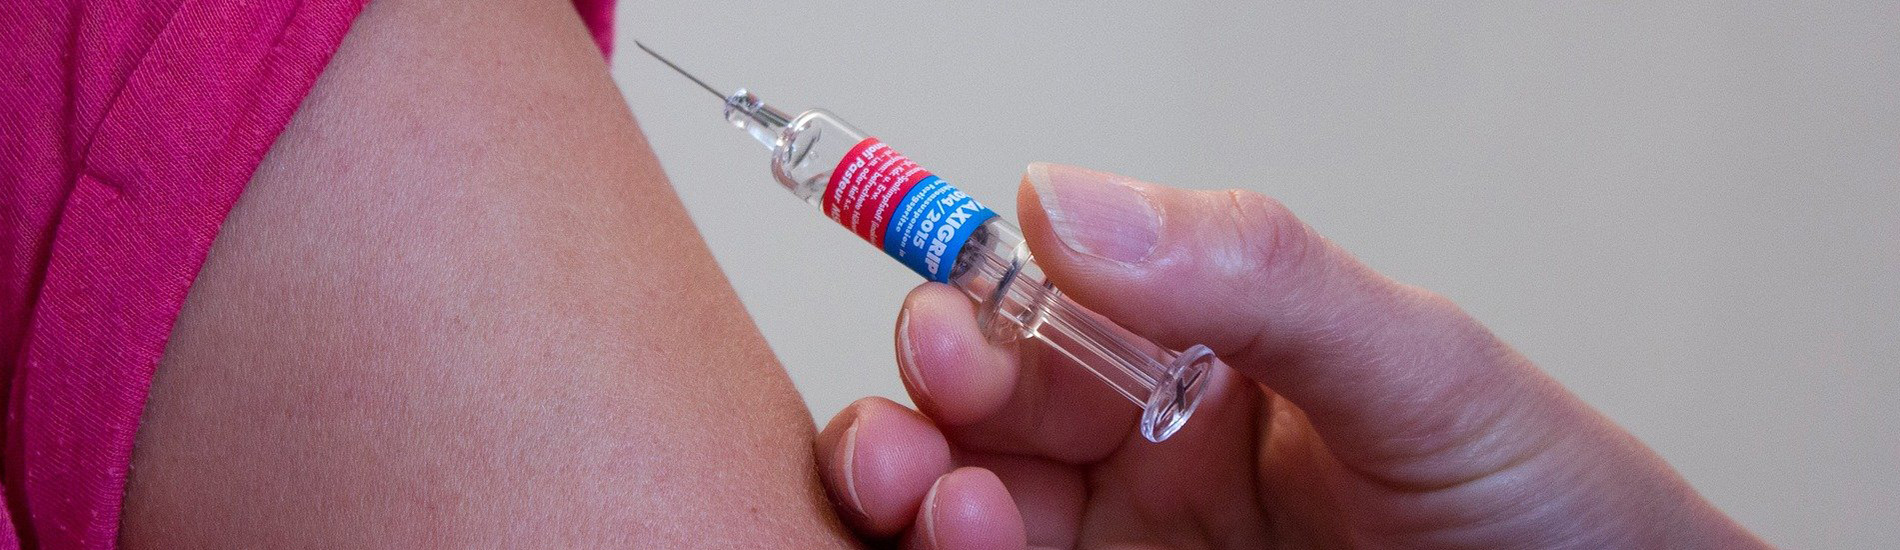 Μην ξεχνάτε το εμβόλιο κατά της γρίπης!